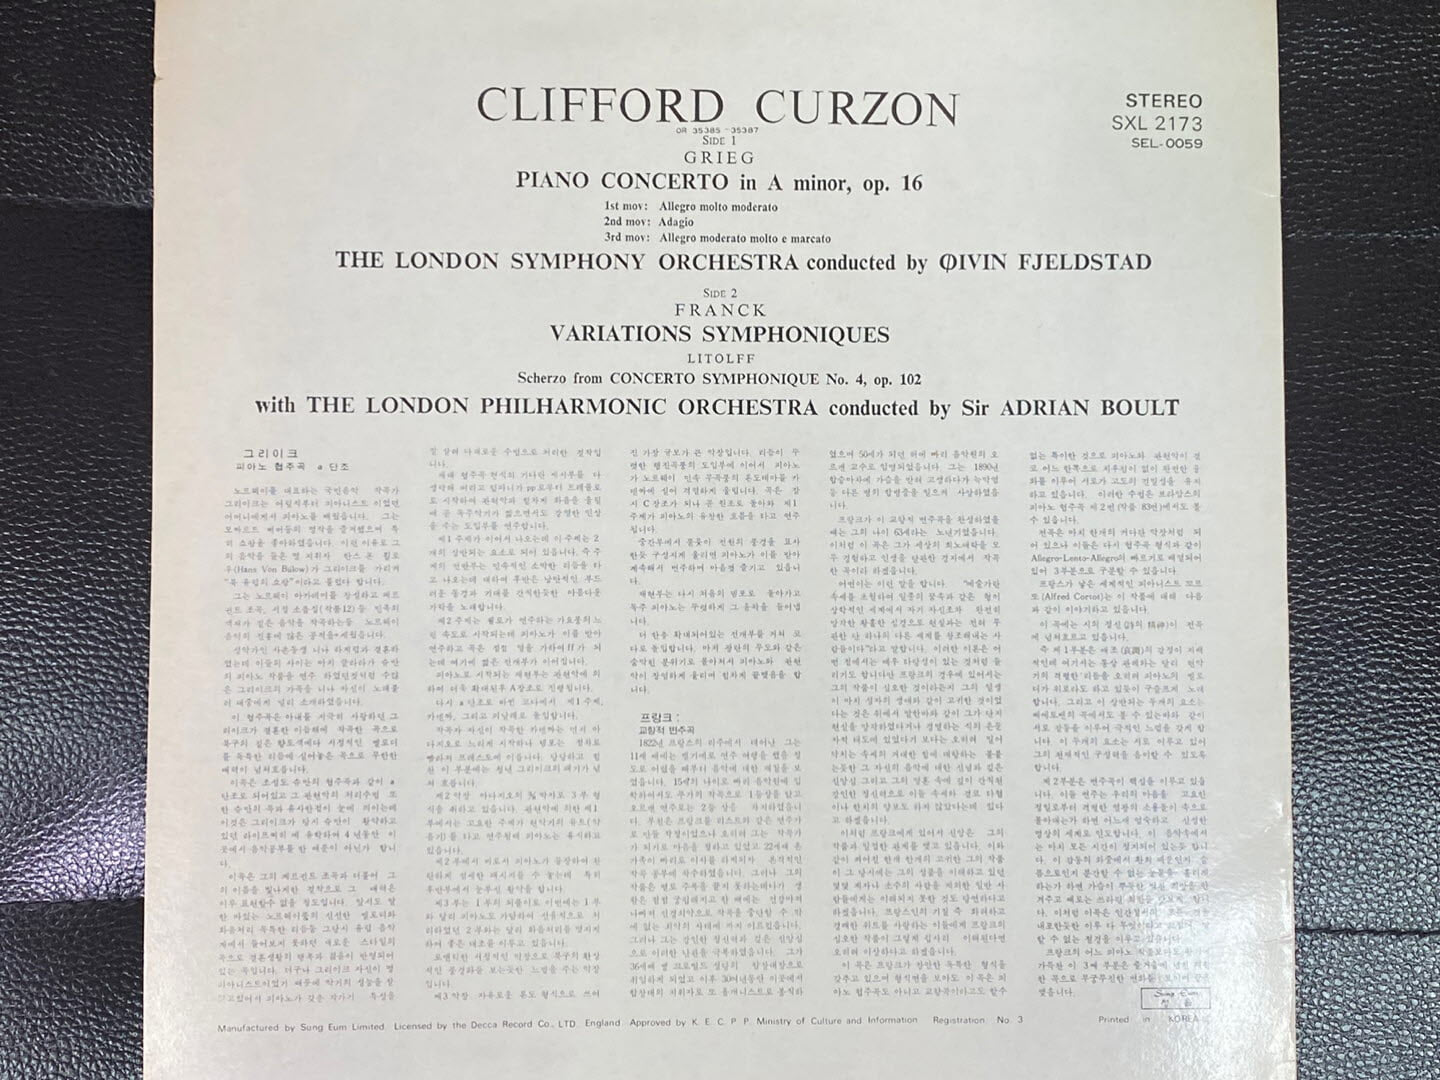 [LP] 클리포드 커즌 - Clifford Curzon - Grieg,Franck,Litolff LP [성음-라이센스반]